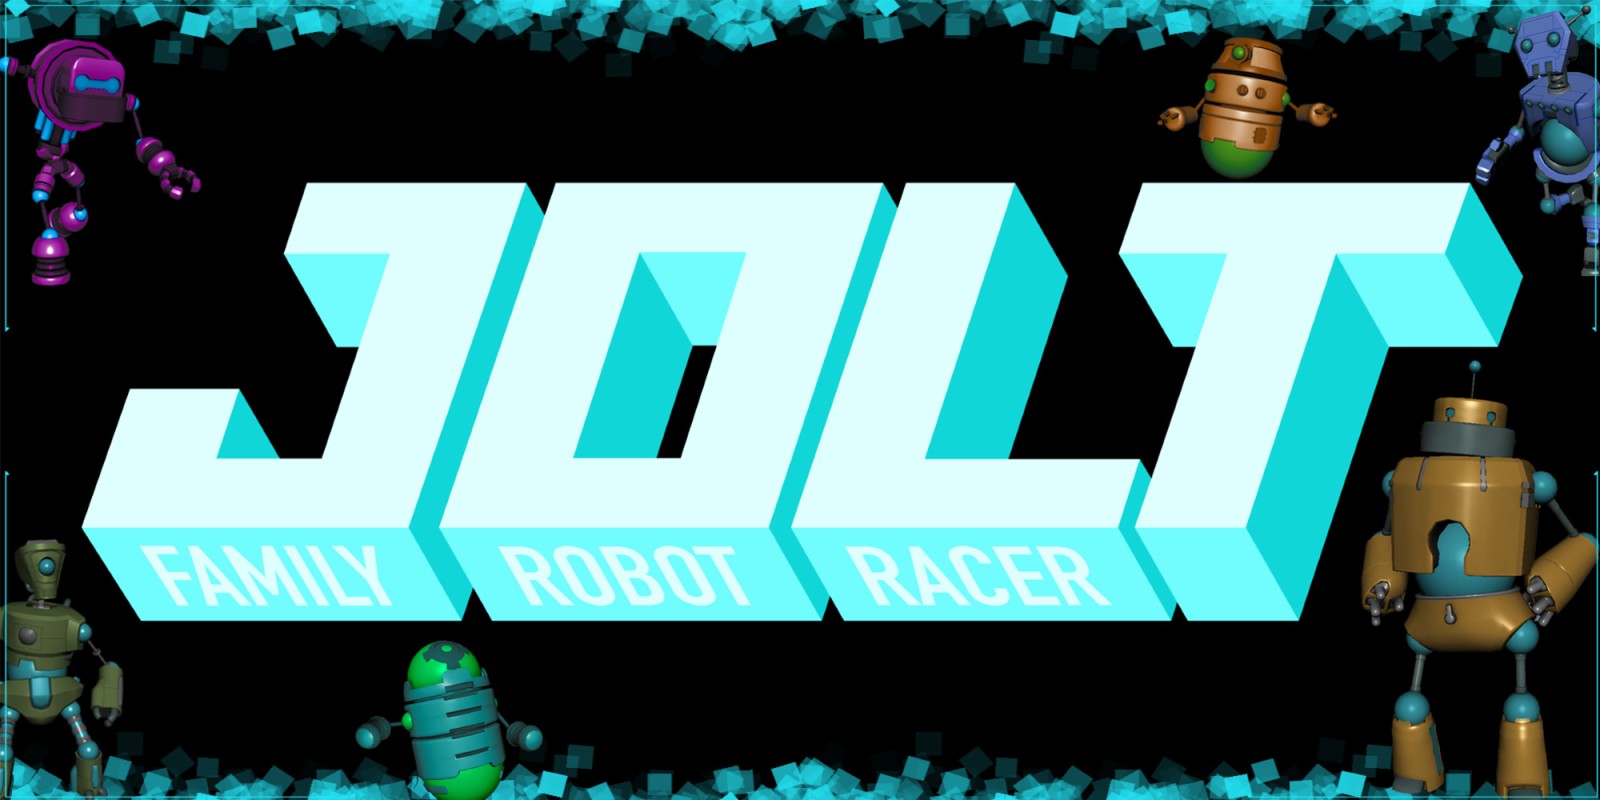 Jolt Family Robot Racer